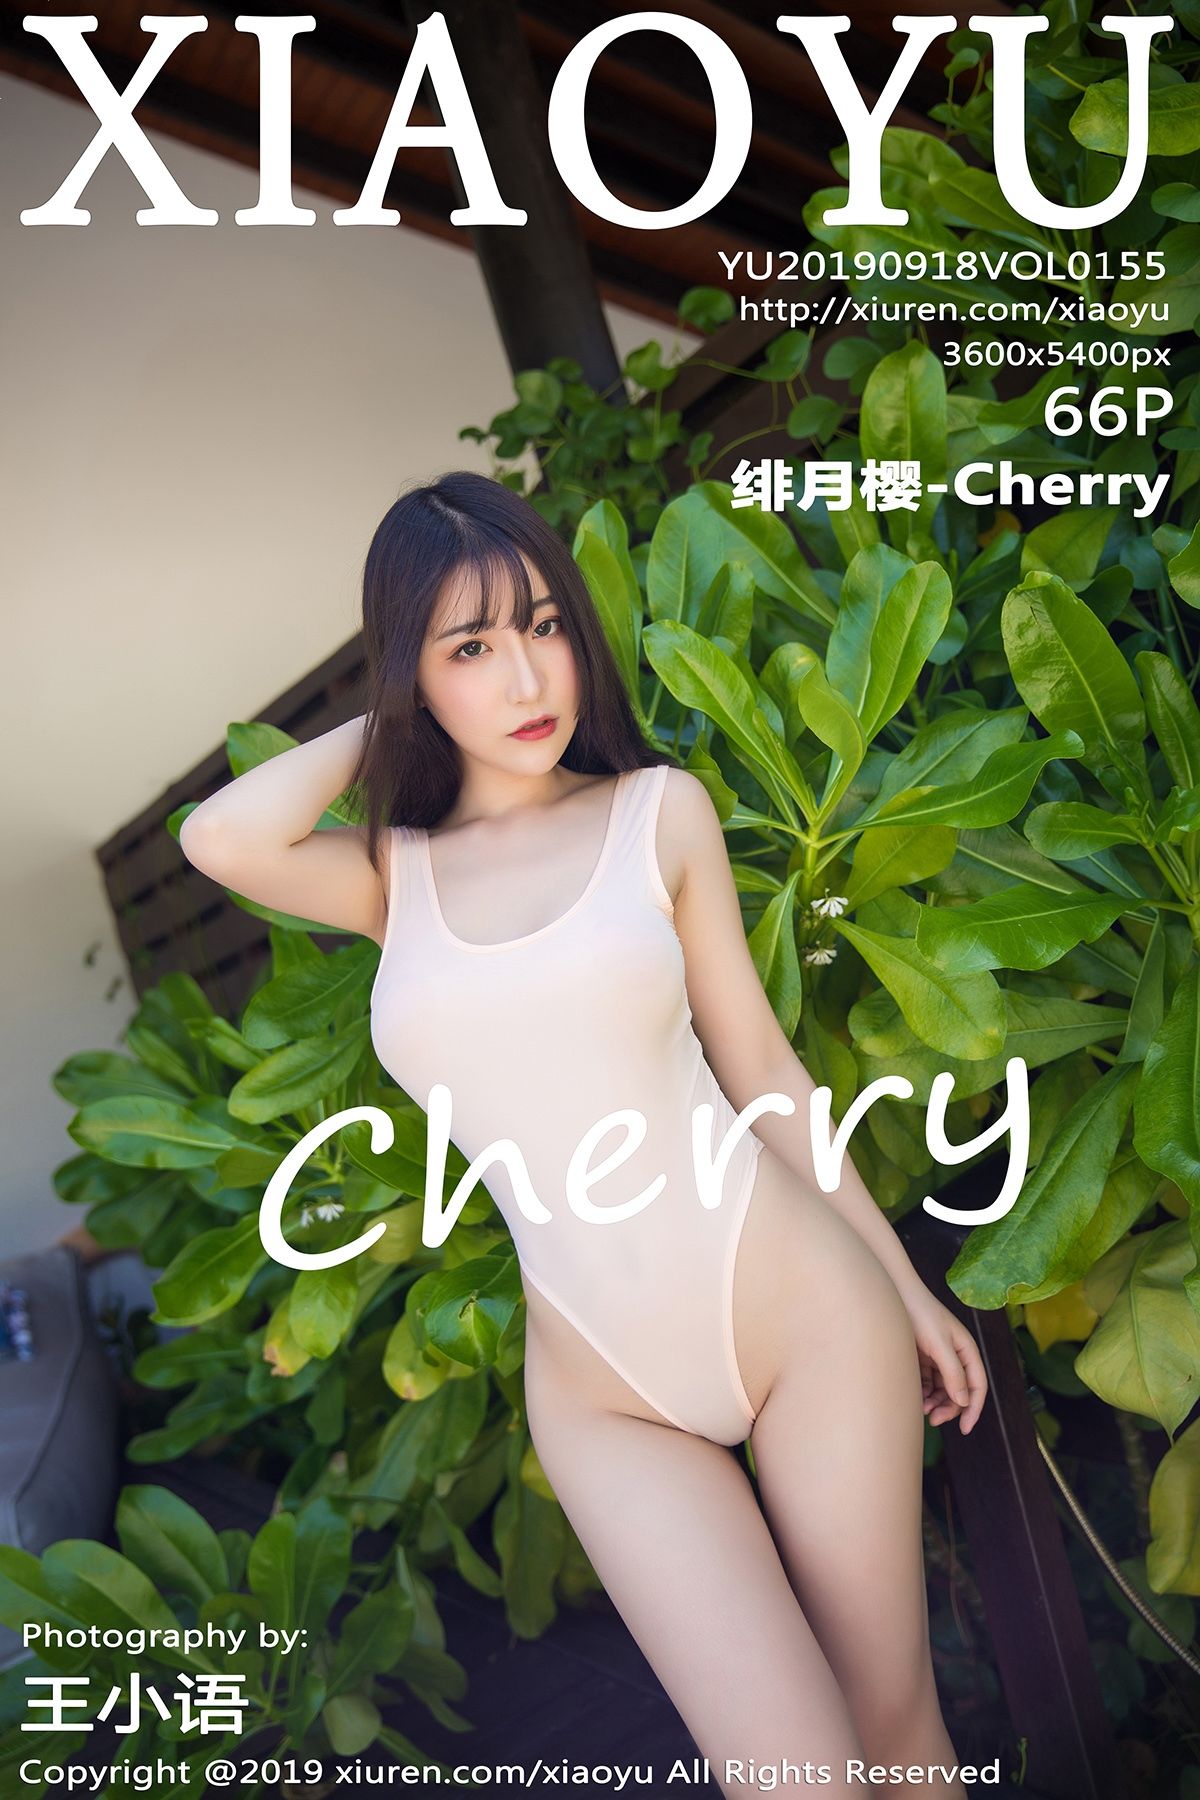 [XIAOYU语画界] 2019.09.18 VOL.155 绯月樱-Cherry